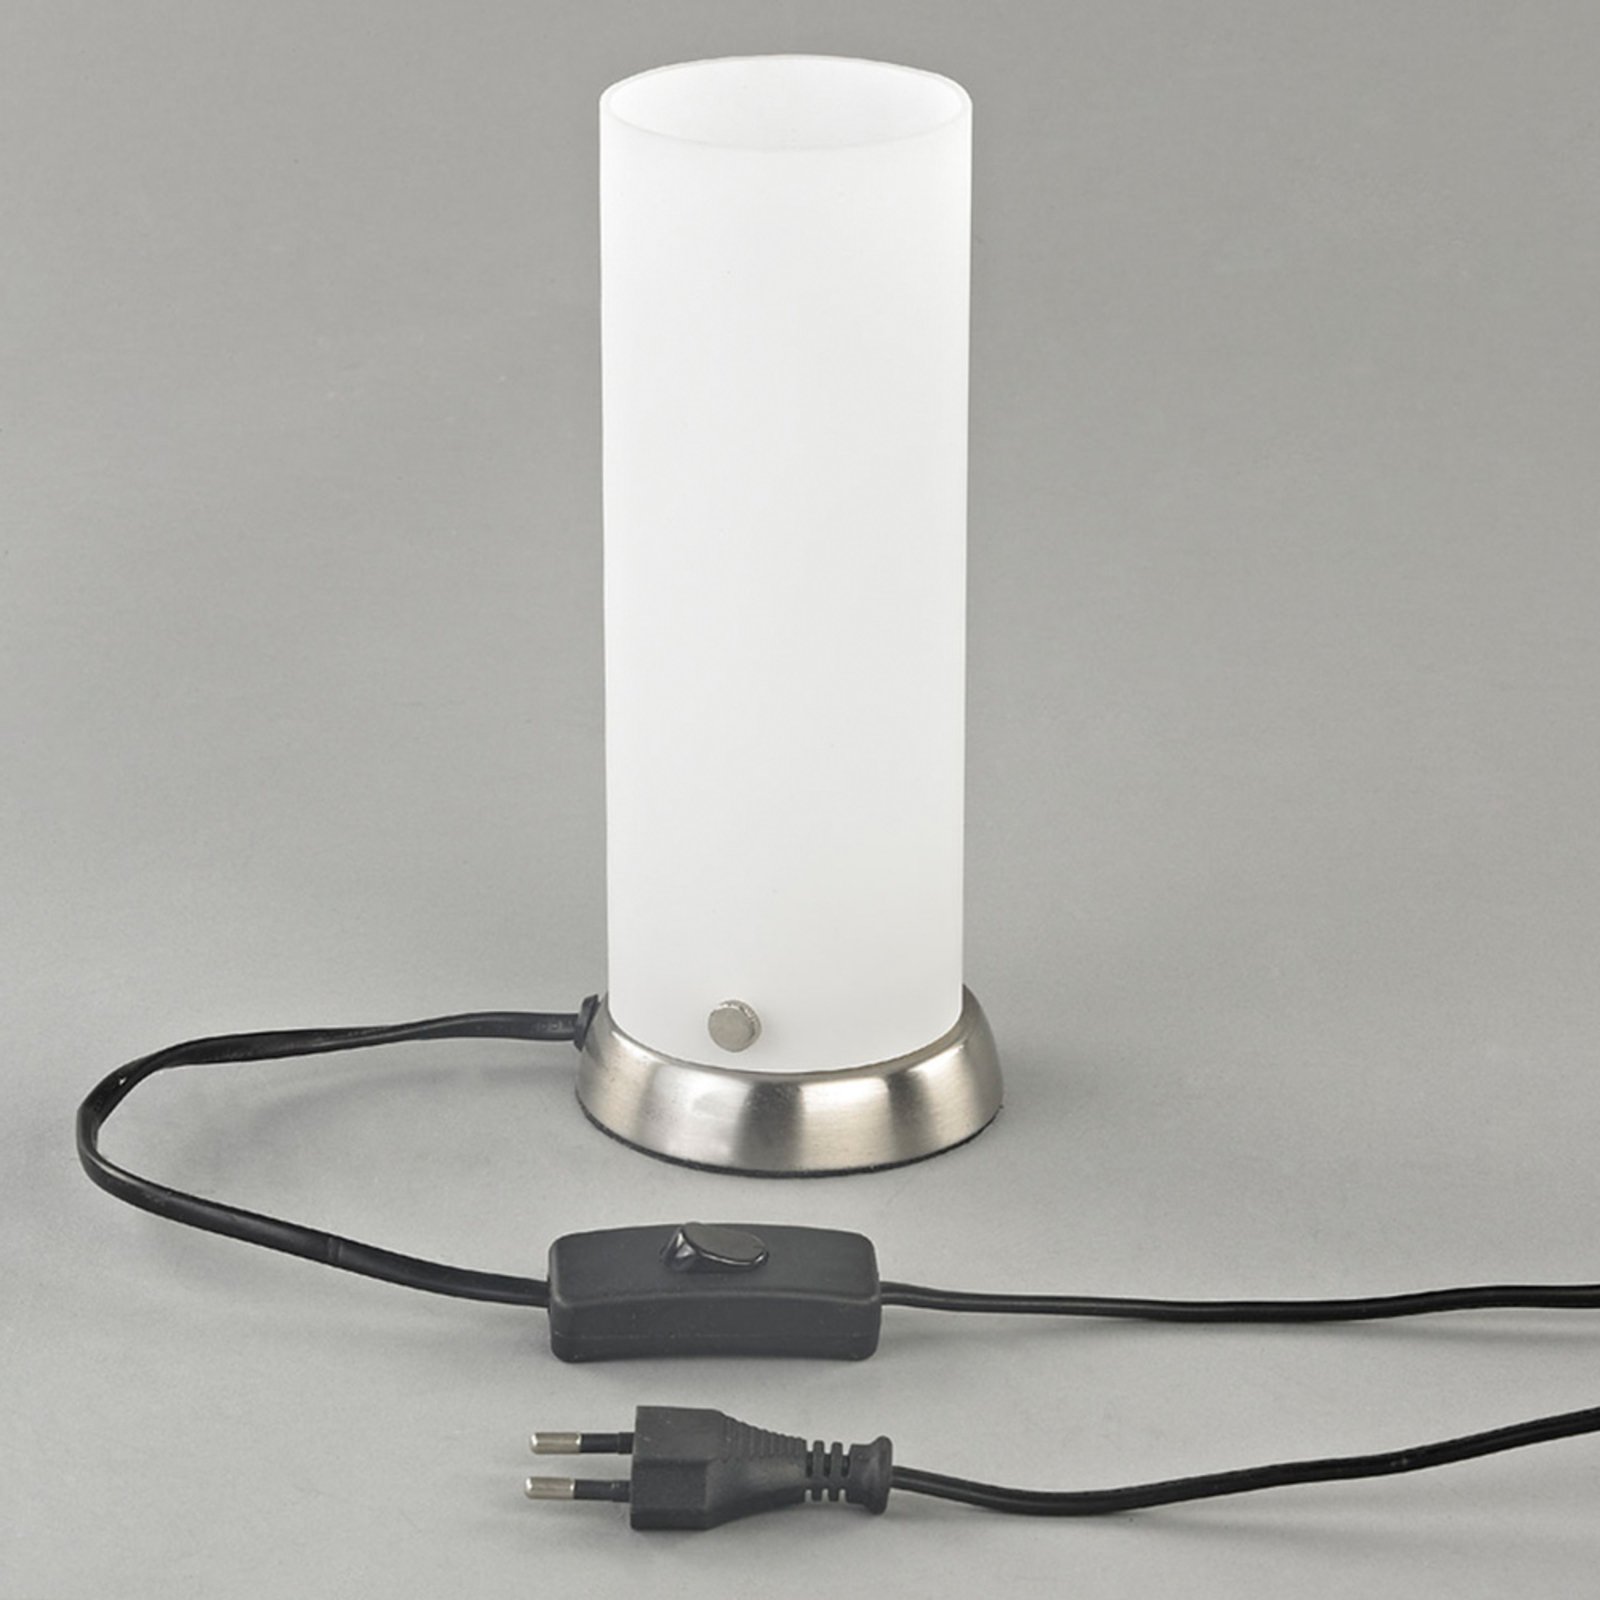 Andrew asztali lámpa, henger alakú, üveg